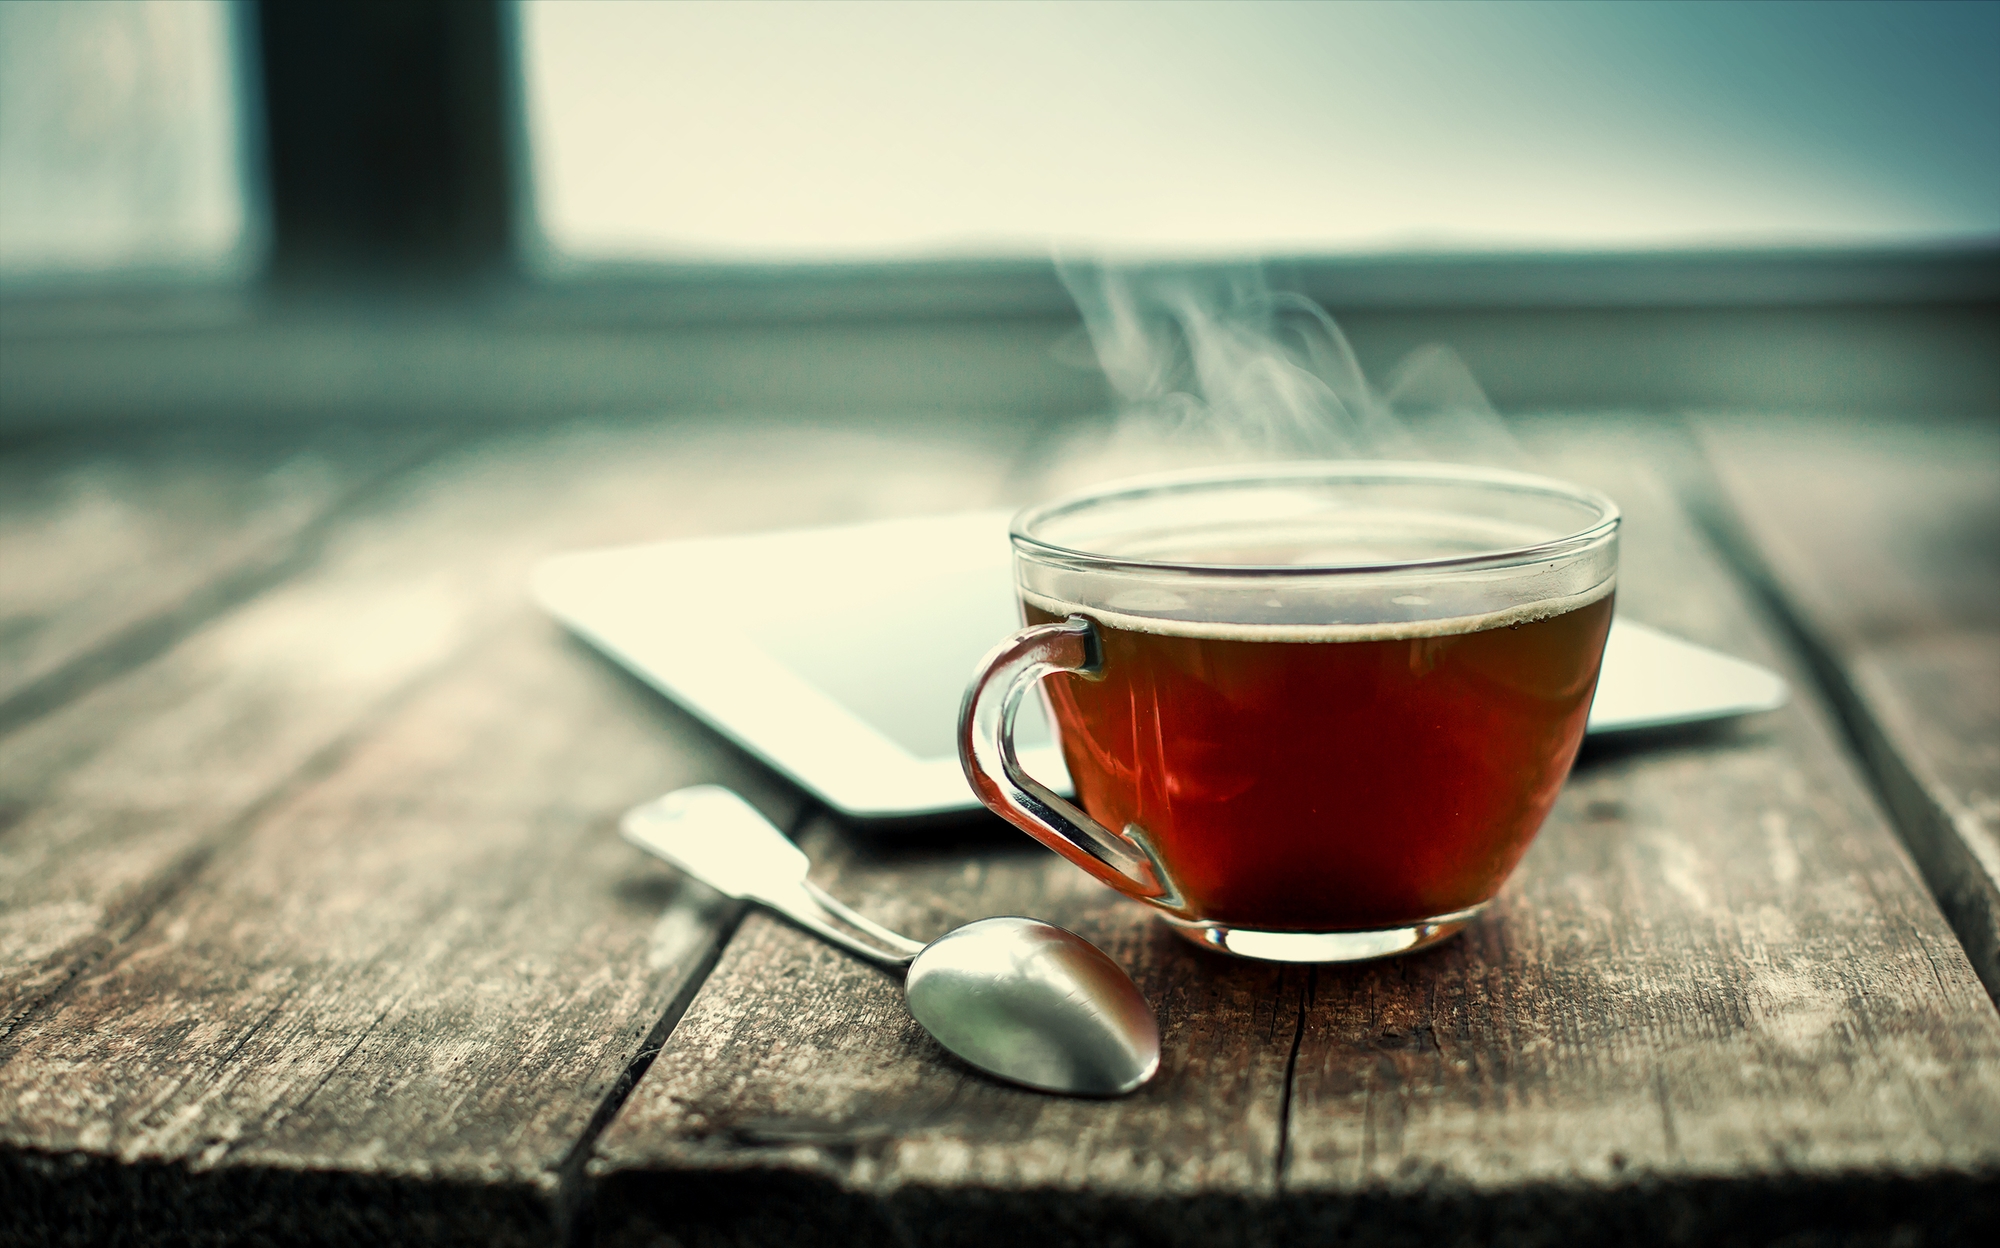 herbata na drewnianym stole